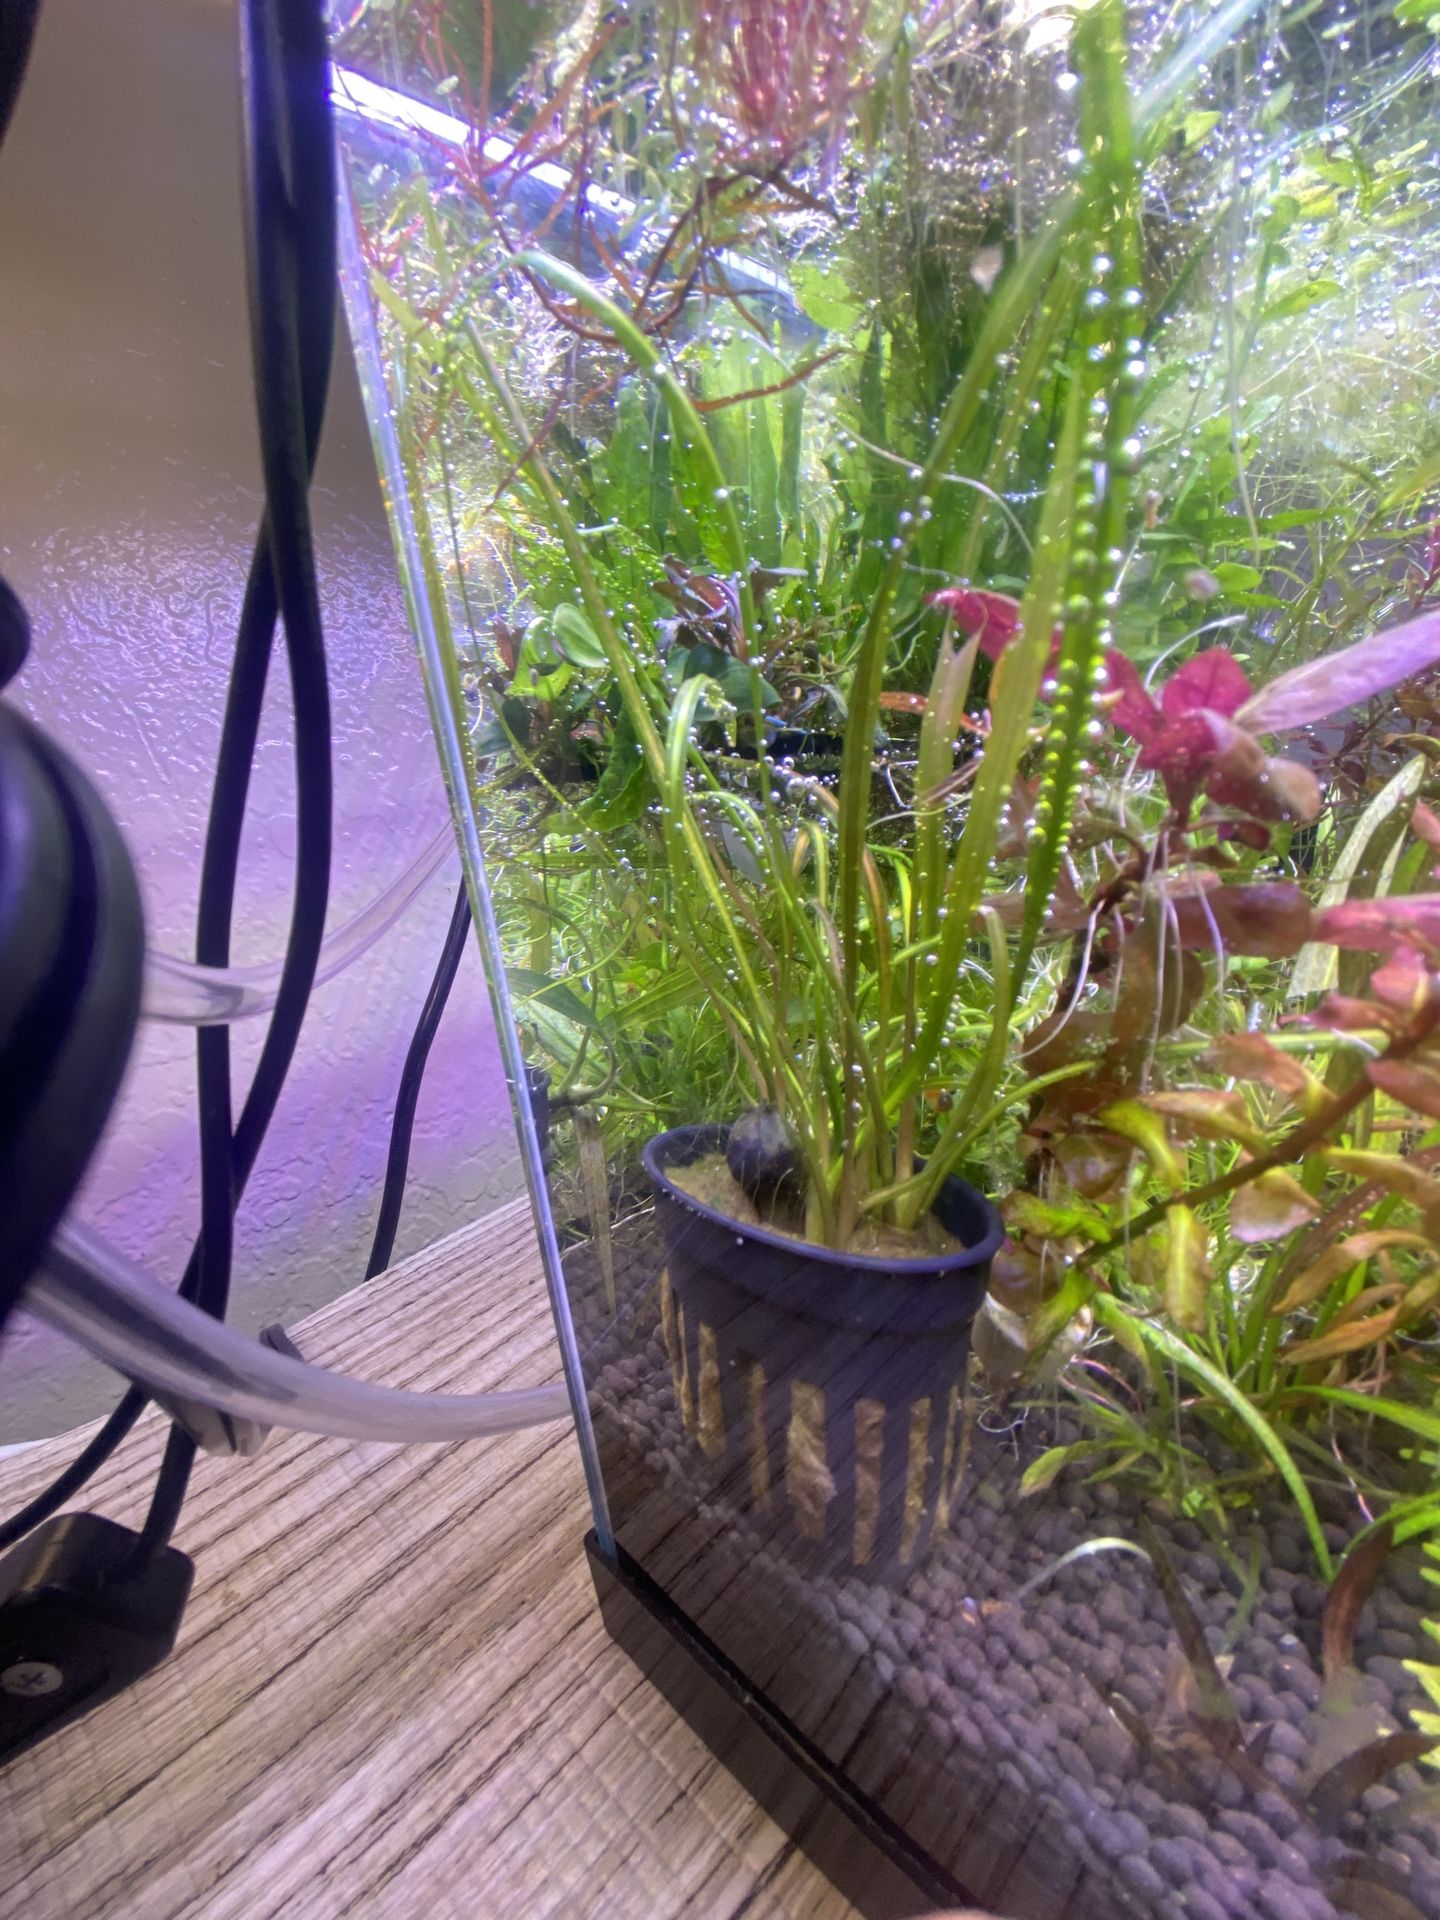 Aquarium / Aquatic Plants For A Fish Tank